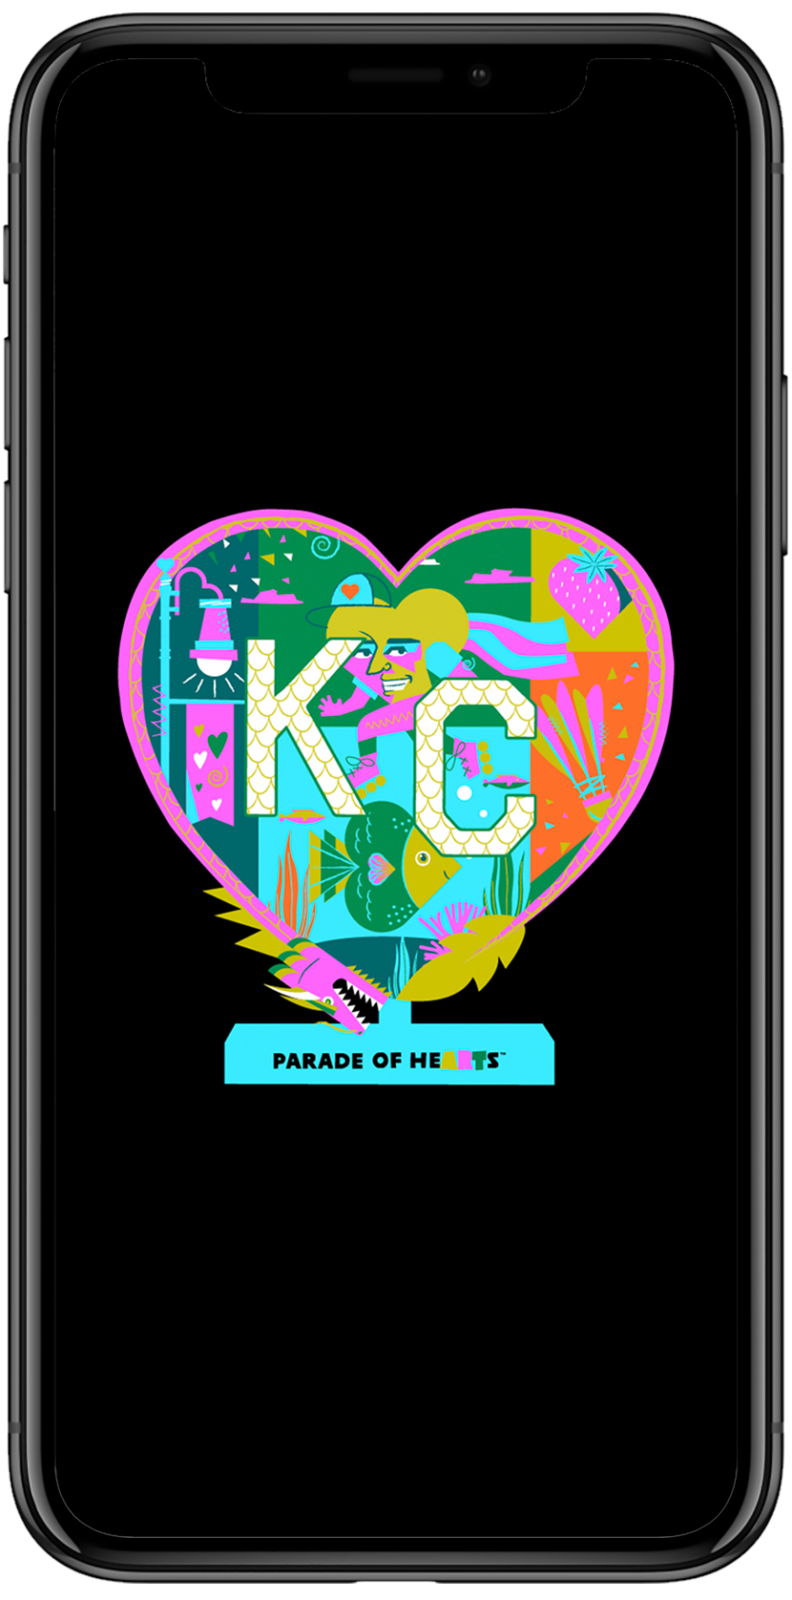 Parade of Hearts app